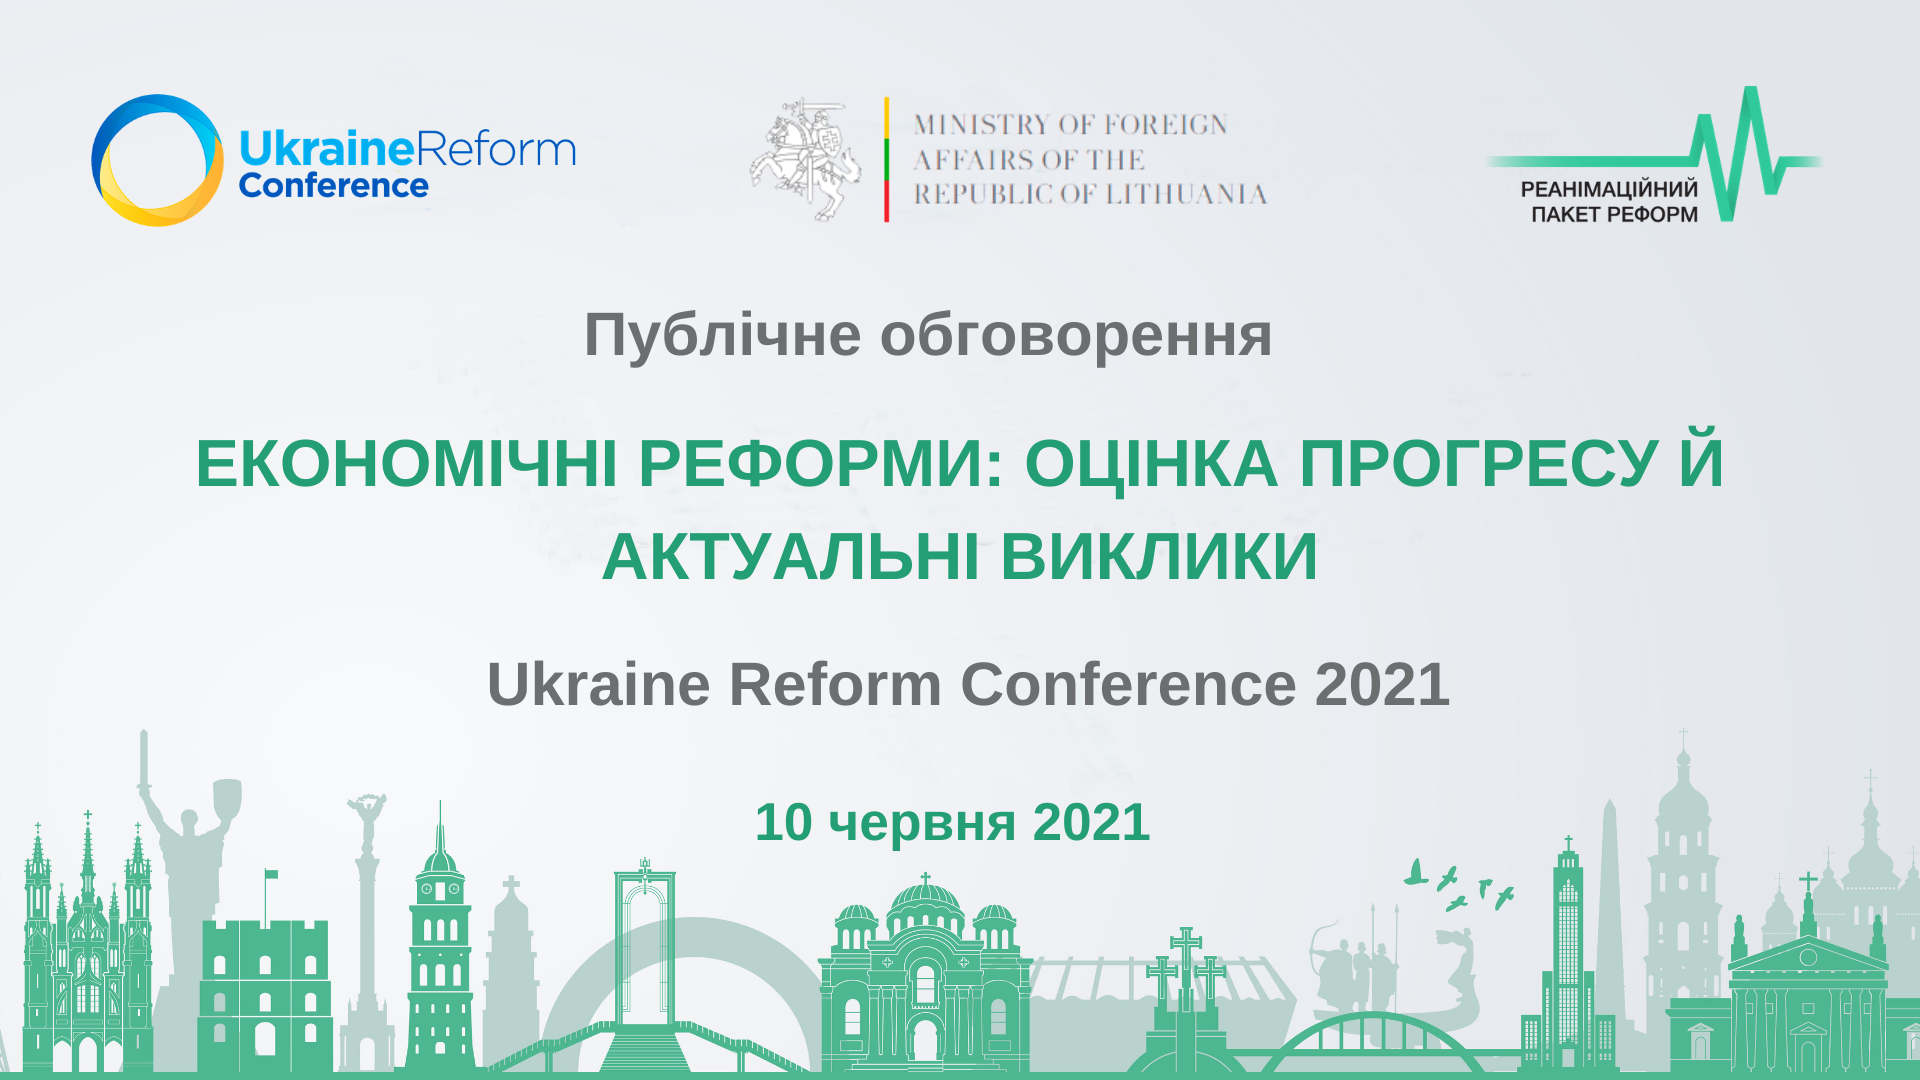 10 червня — онлайн-обговорення «Економічні реформи: оцінка прогресу й актуальні виклики»